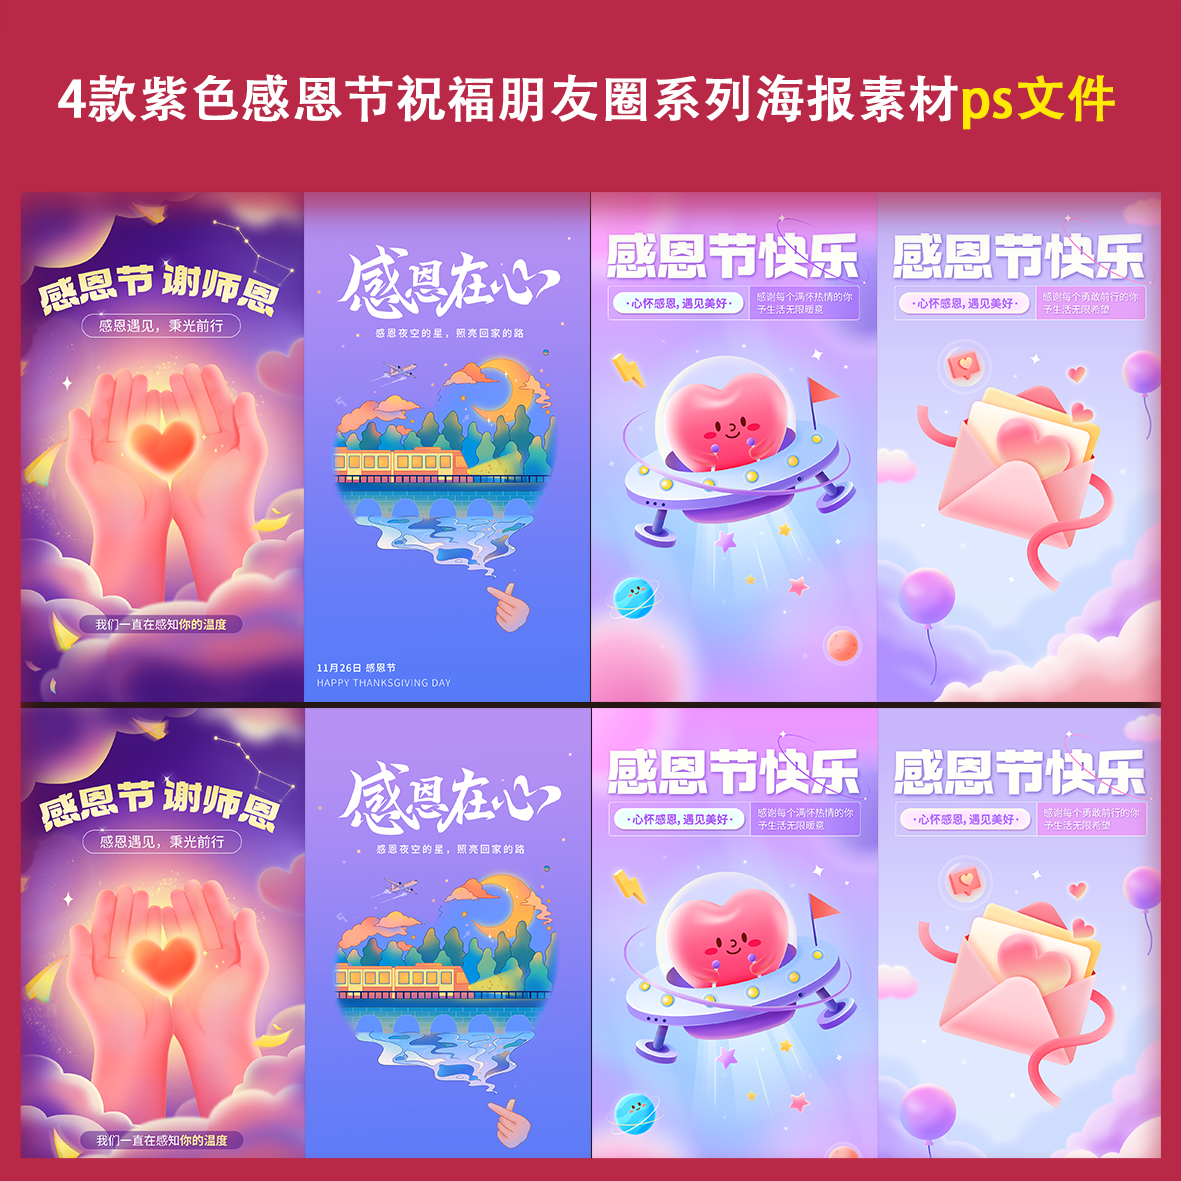 4款紫色感恩节朋友圈系列海报素材ps节日活动宣传促销手机展模板